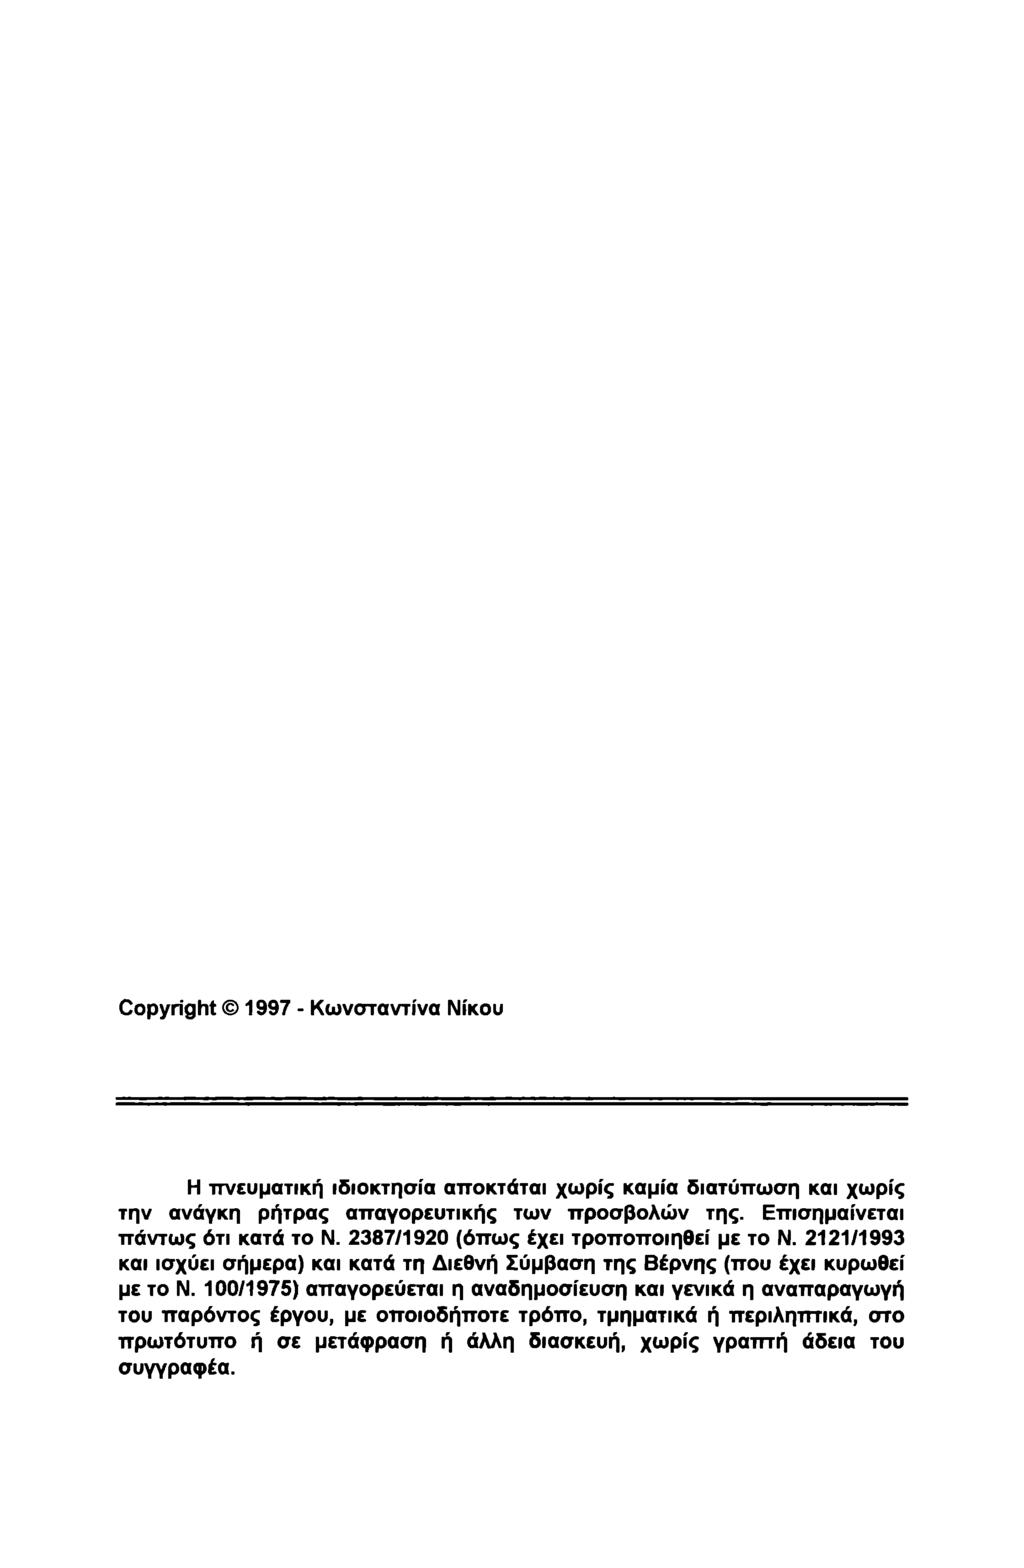 Copyright 1997 - Κωνσταντίνα Νίκου Η πνευματική ιδιοκτησία αποκτάται χωρίς καμία διατύπωση και χωρίς την ανάγκη ρήτρας απαγορευτικής των προσβολών της. Επισημαίνεται πάντως ότι κατά το Ν.